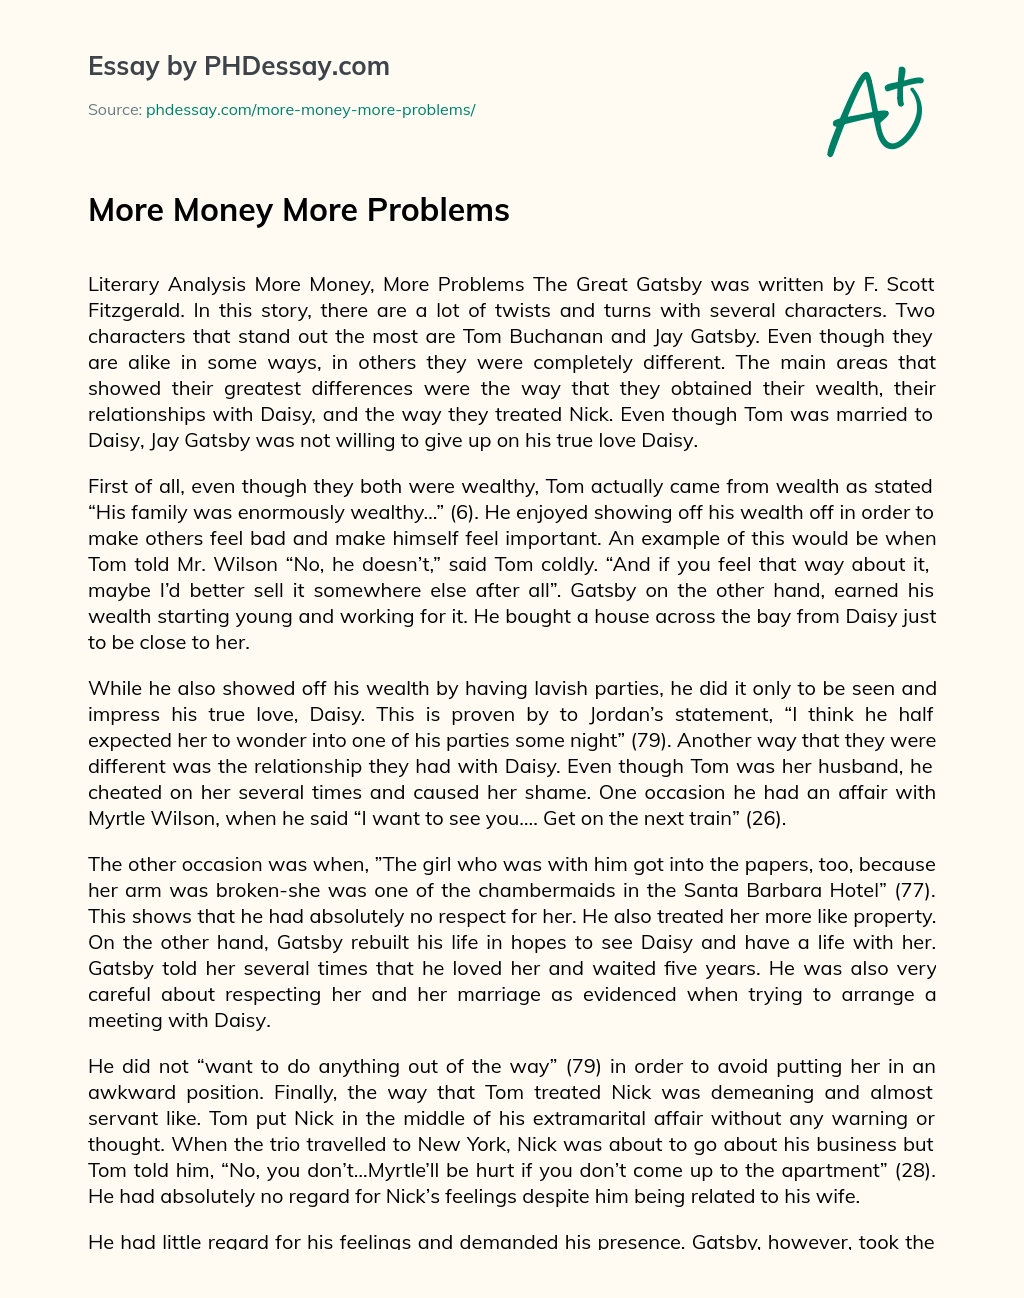 More Money More Problems essay